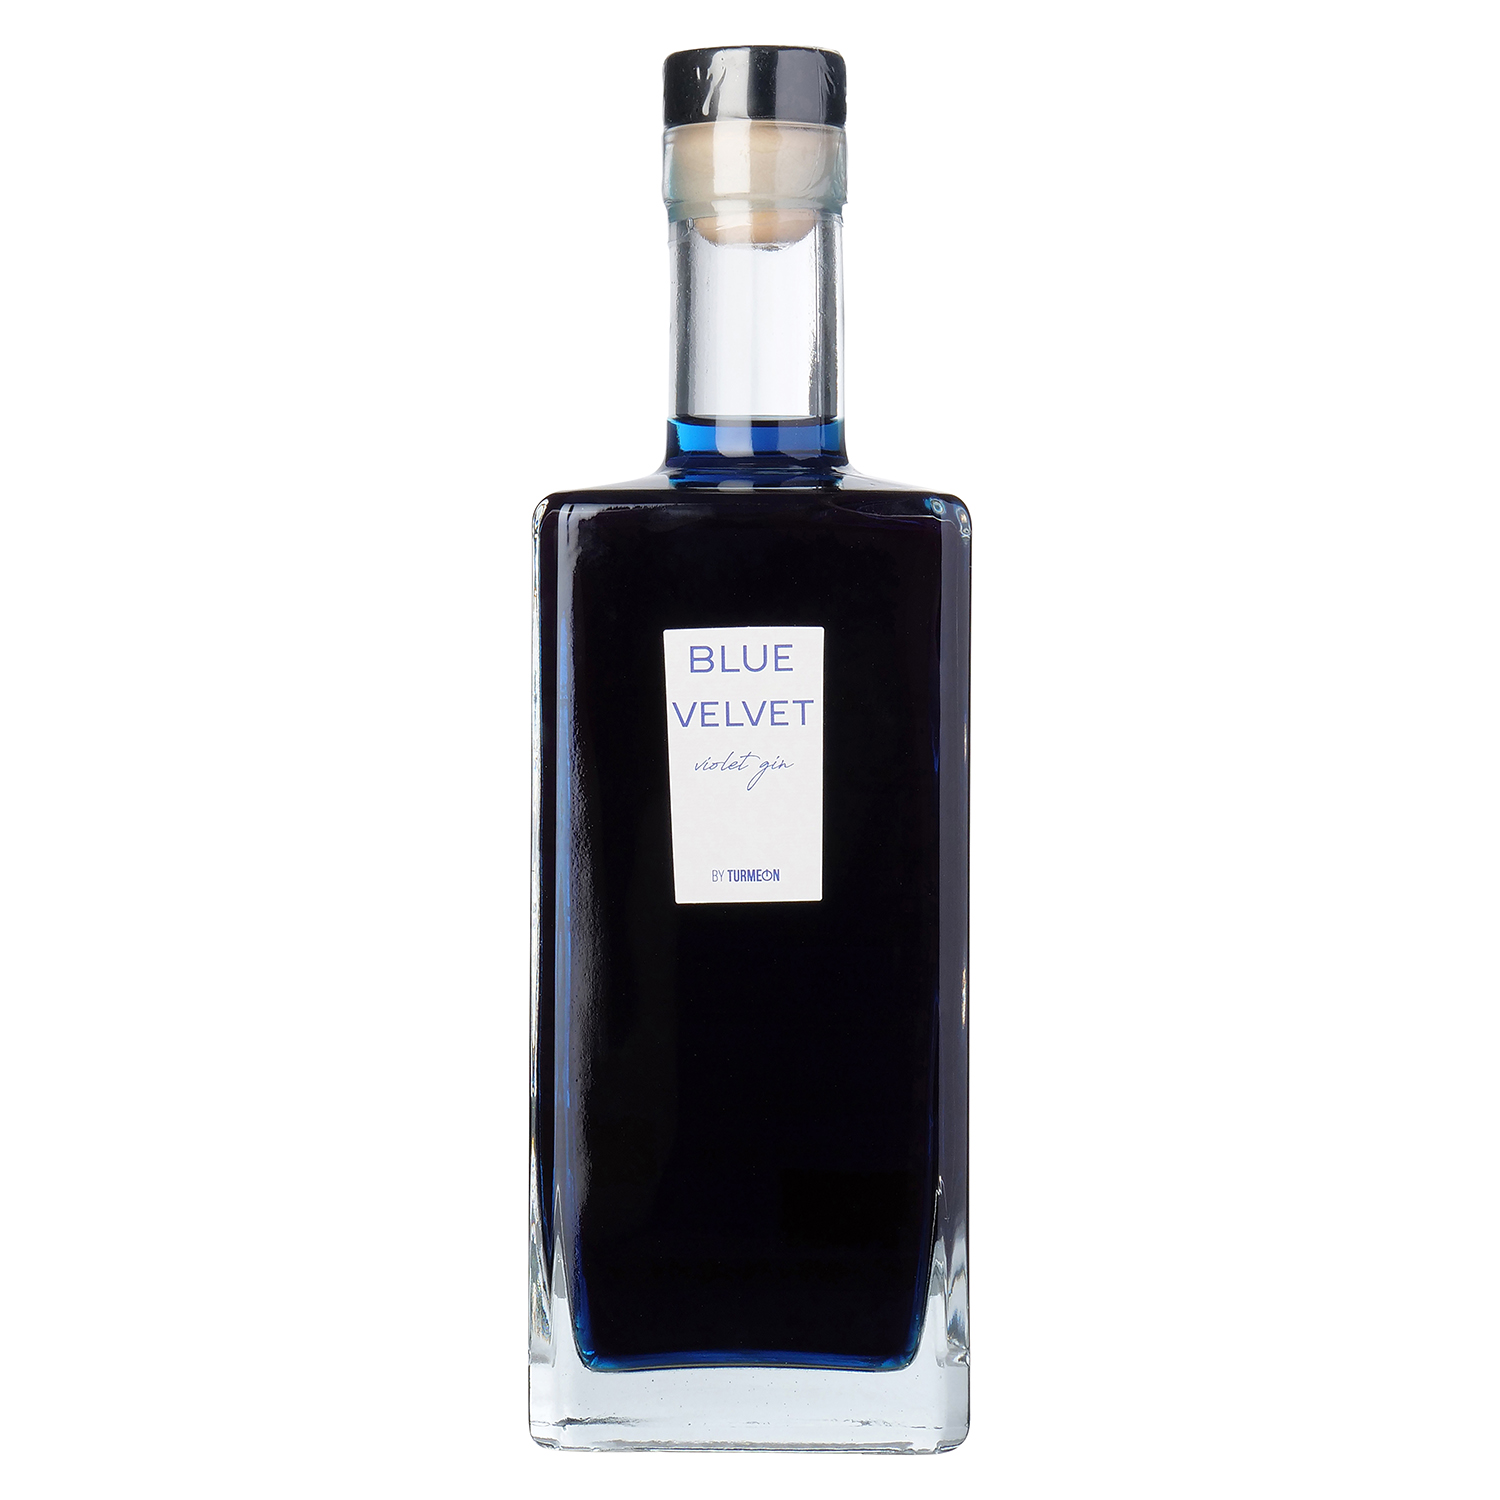 Blue Velvet Violet Gin 40% vol., 0,7l